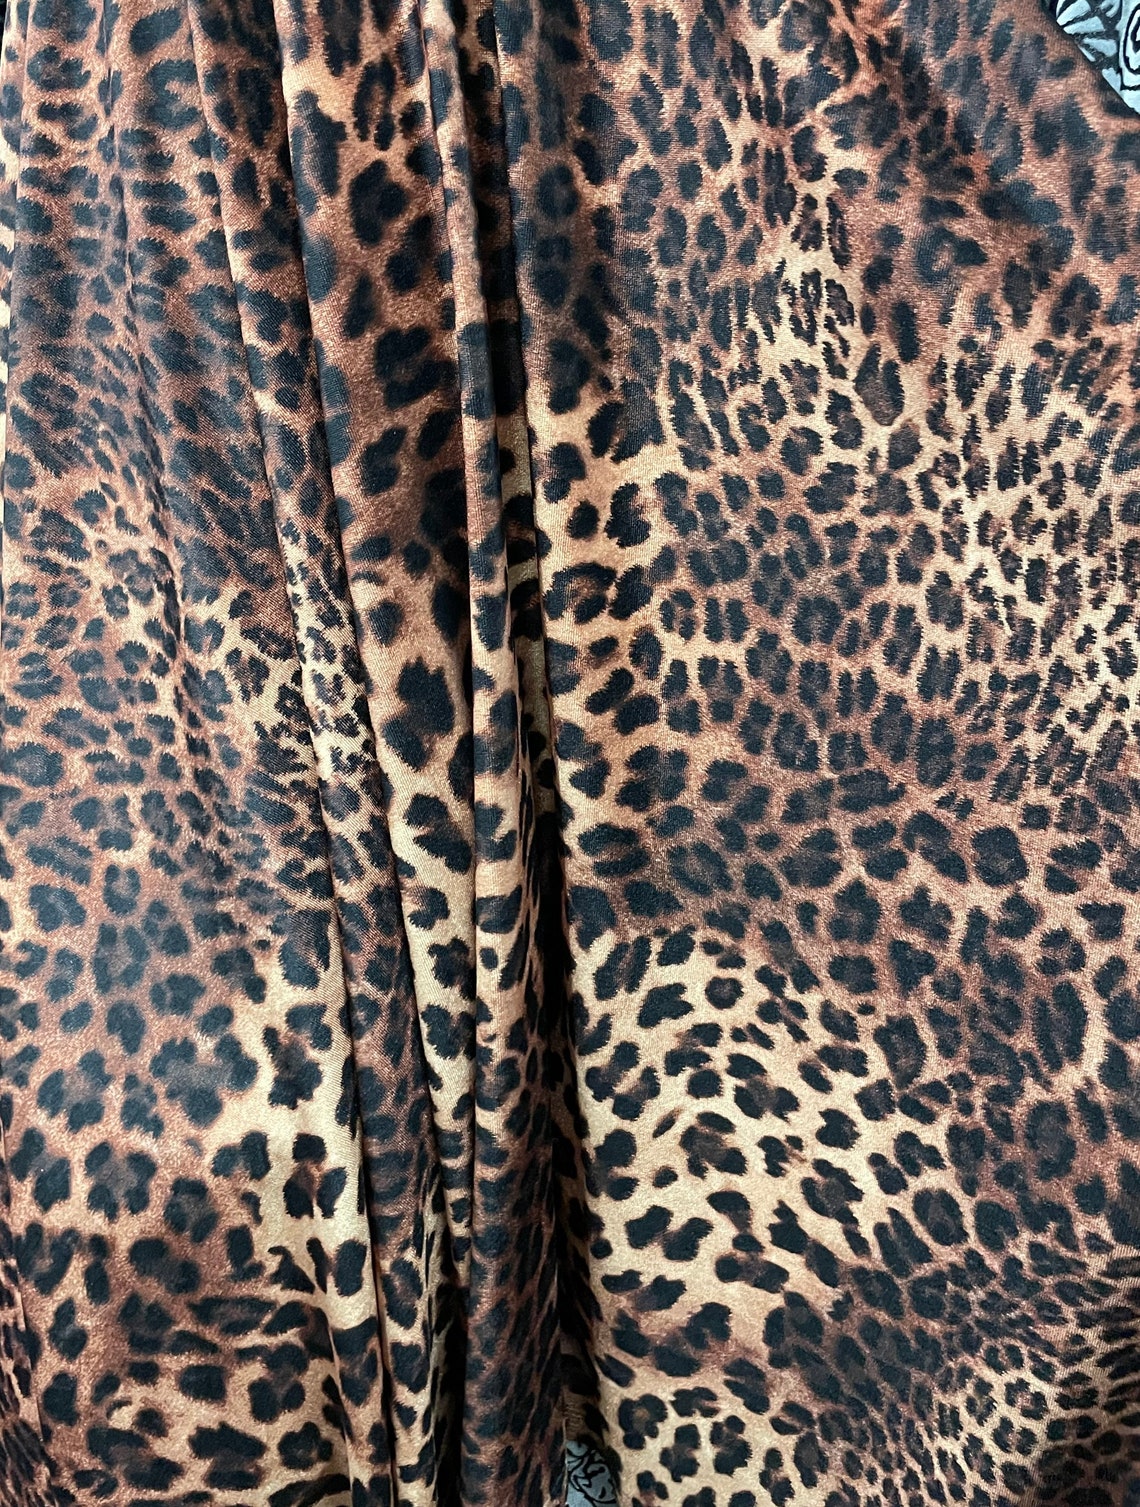 New Velvet Cheetah Print on Velvet Fabric 4 Way Stretch. Sold - Etsy